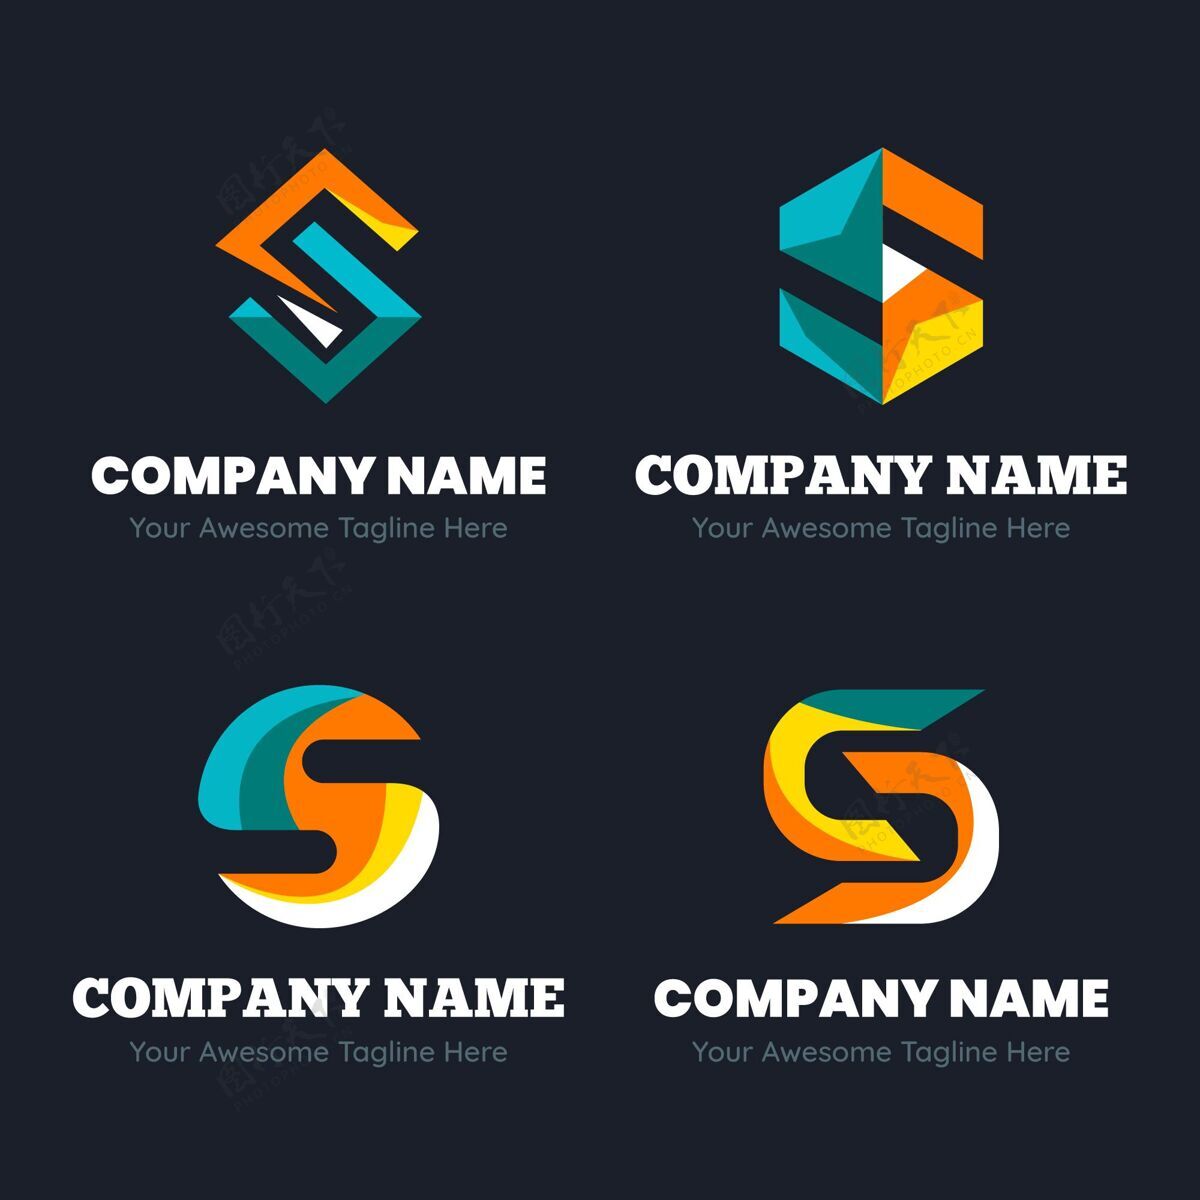 标志平面设计的标志模板收集品牌S标志公司